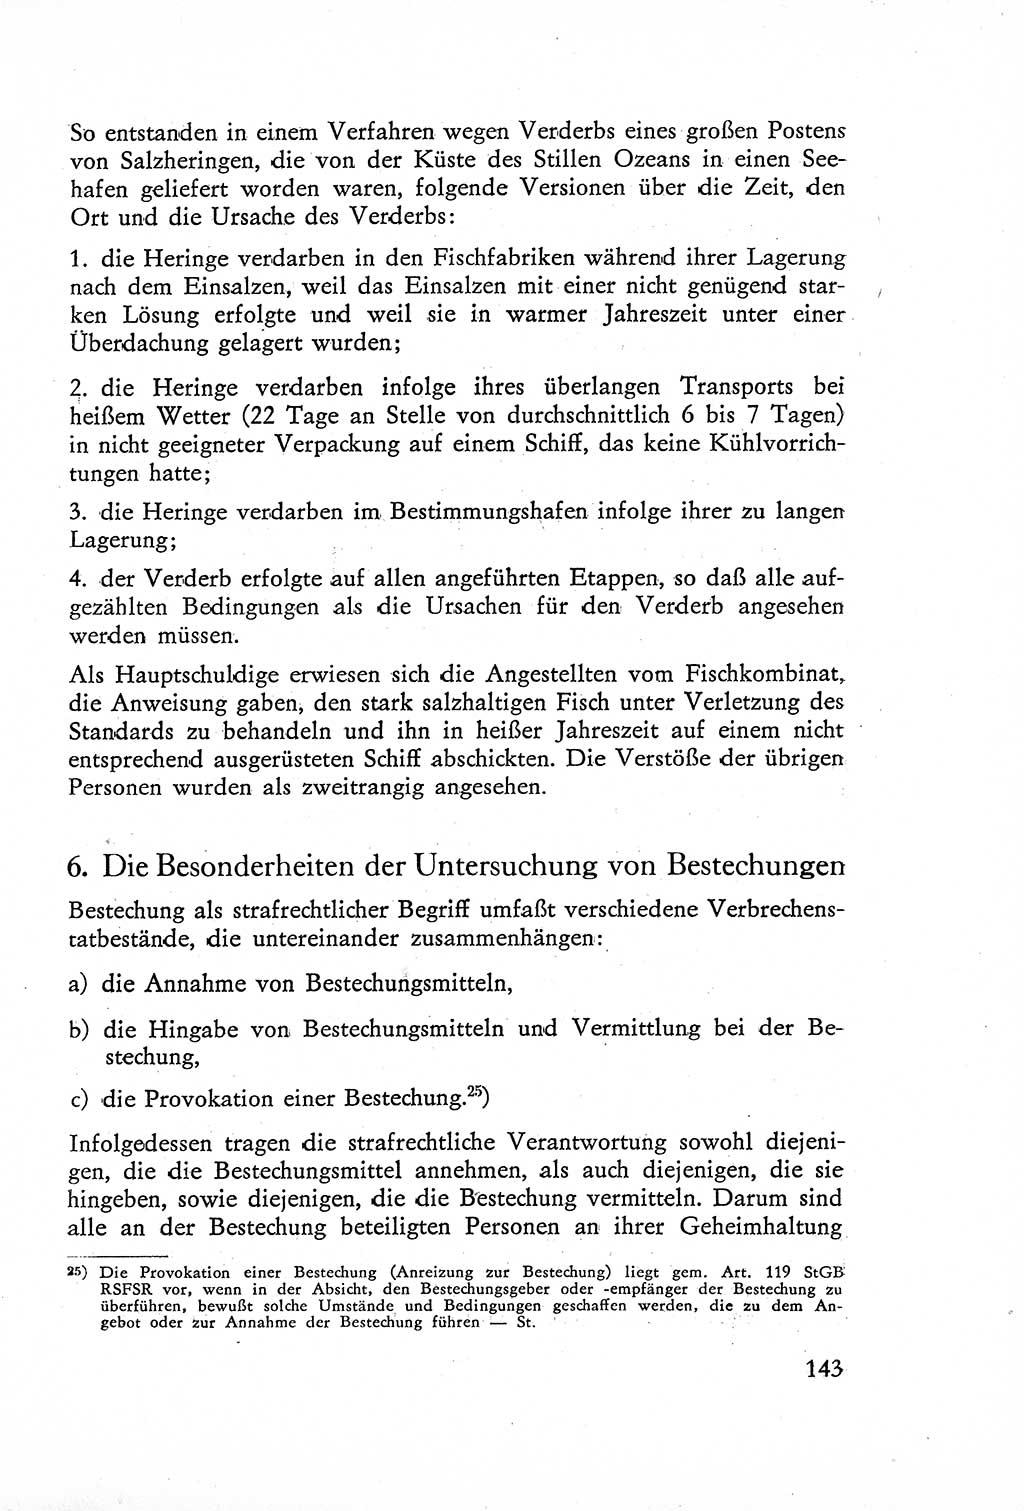 Die Untersuchung einzelner Verbrechensarten [Deutsche Demokratische Republik (DDR)] 1960, Seite 143 (Unters. Verbr.-Art. DDR 1960, S. 143)